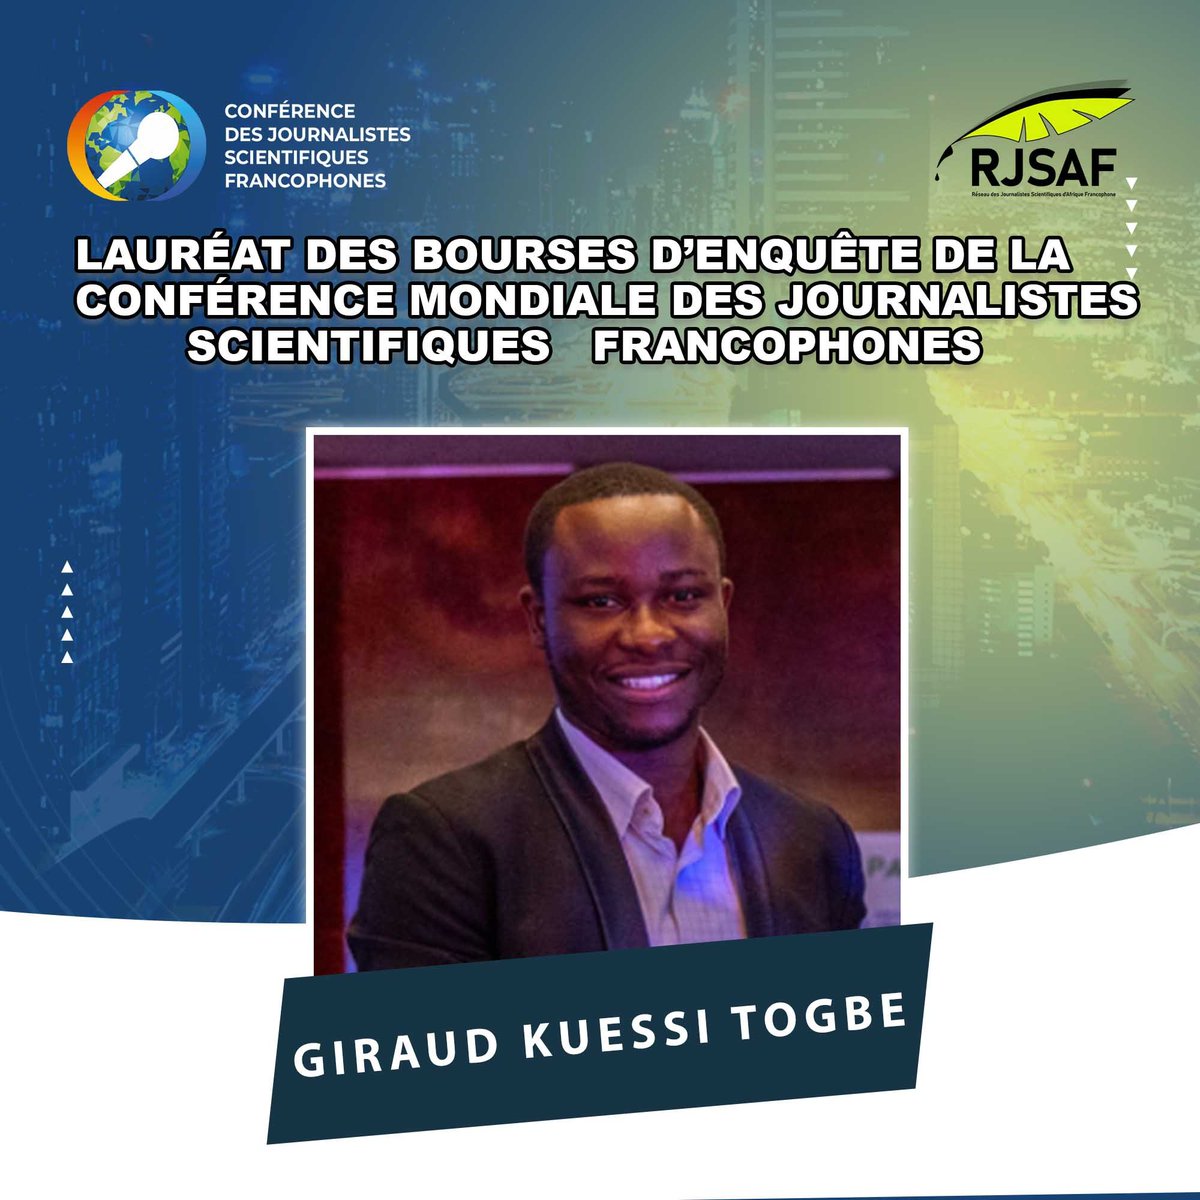 Lauréat des bourses d'enquête de la conférence mondiale des journalistes scientifiques francophones de notre réseau, @KuessiTogbe est journaliste diplômé du @CESTIDAKAR. Il a à son actif une 50aine de productions audiovisuelles. Il est correspondant pour scidev.net.